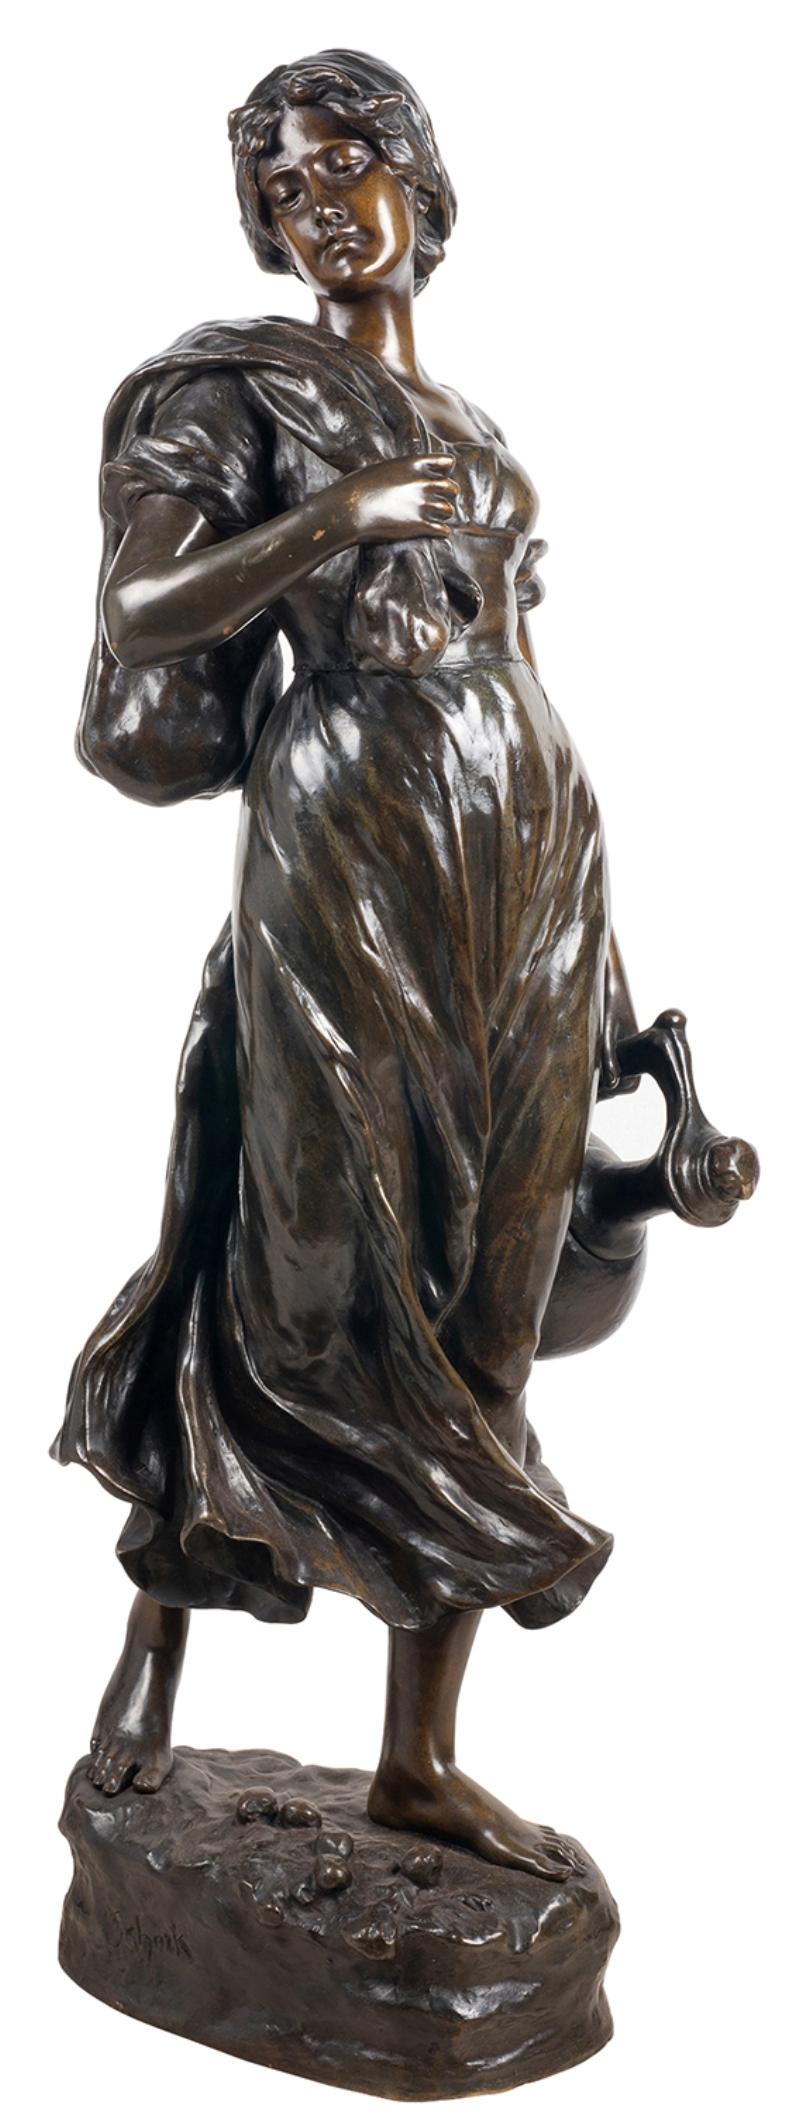 Charmante statue en bronze patiné de la fin du XIXe siècle représentant une jolie jeune fille portant une cruche à eau et un sac. 
Signé : Hans Schork, Autrichien, 1849.